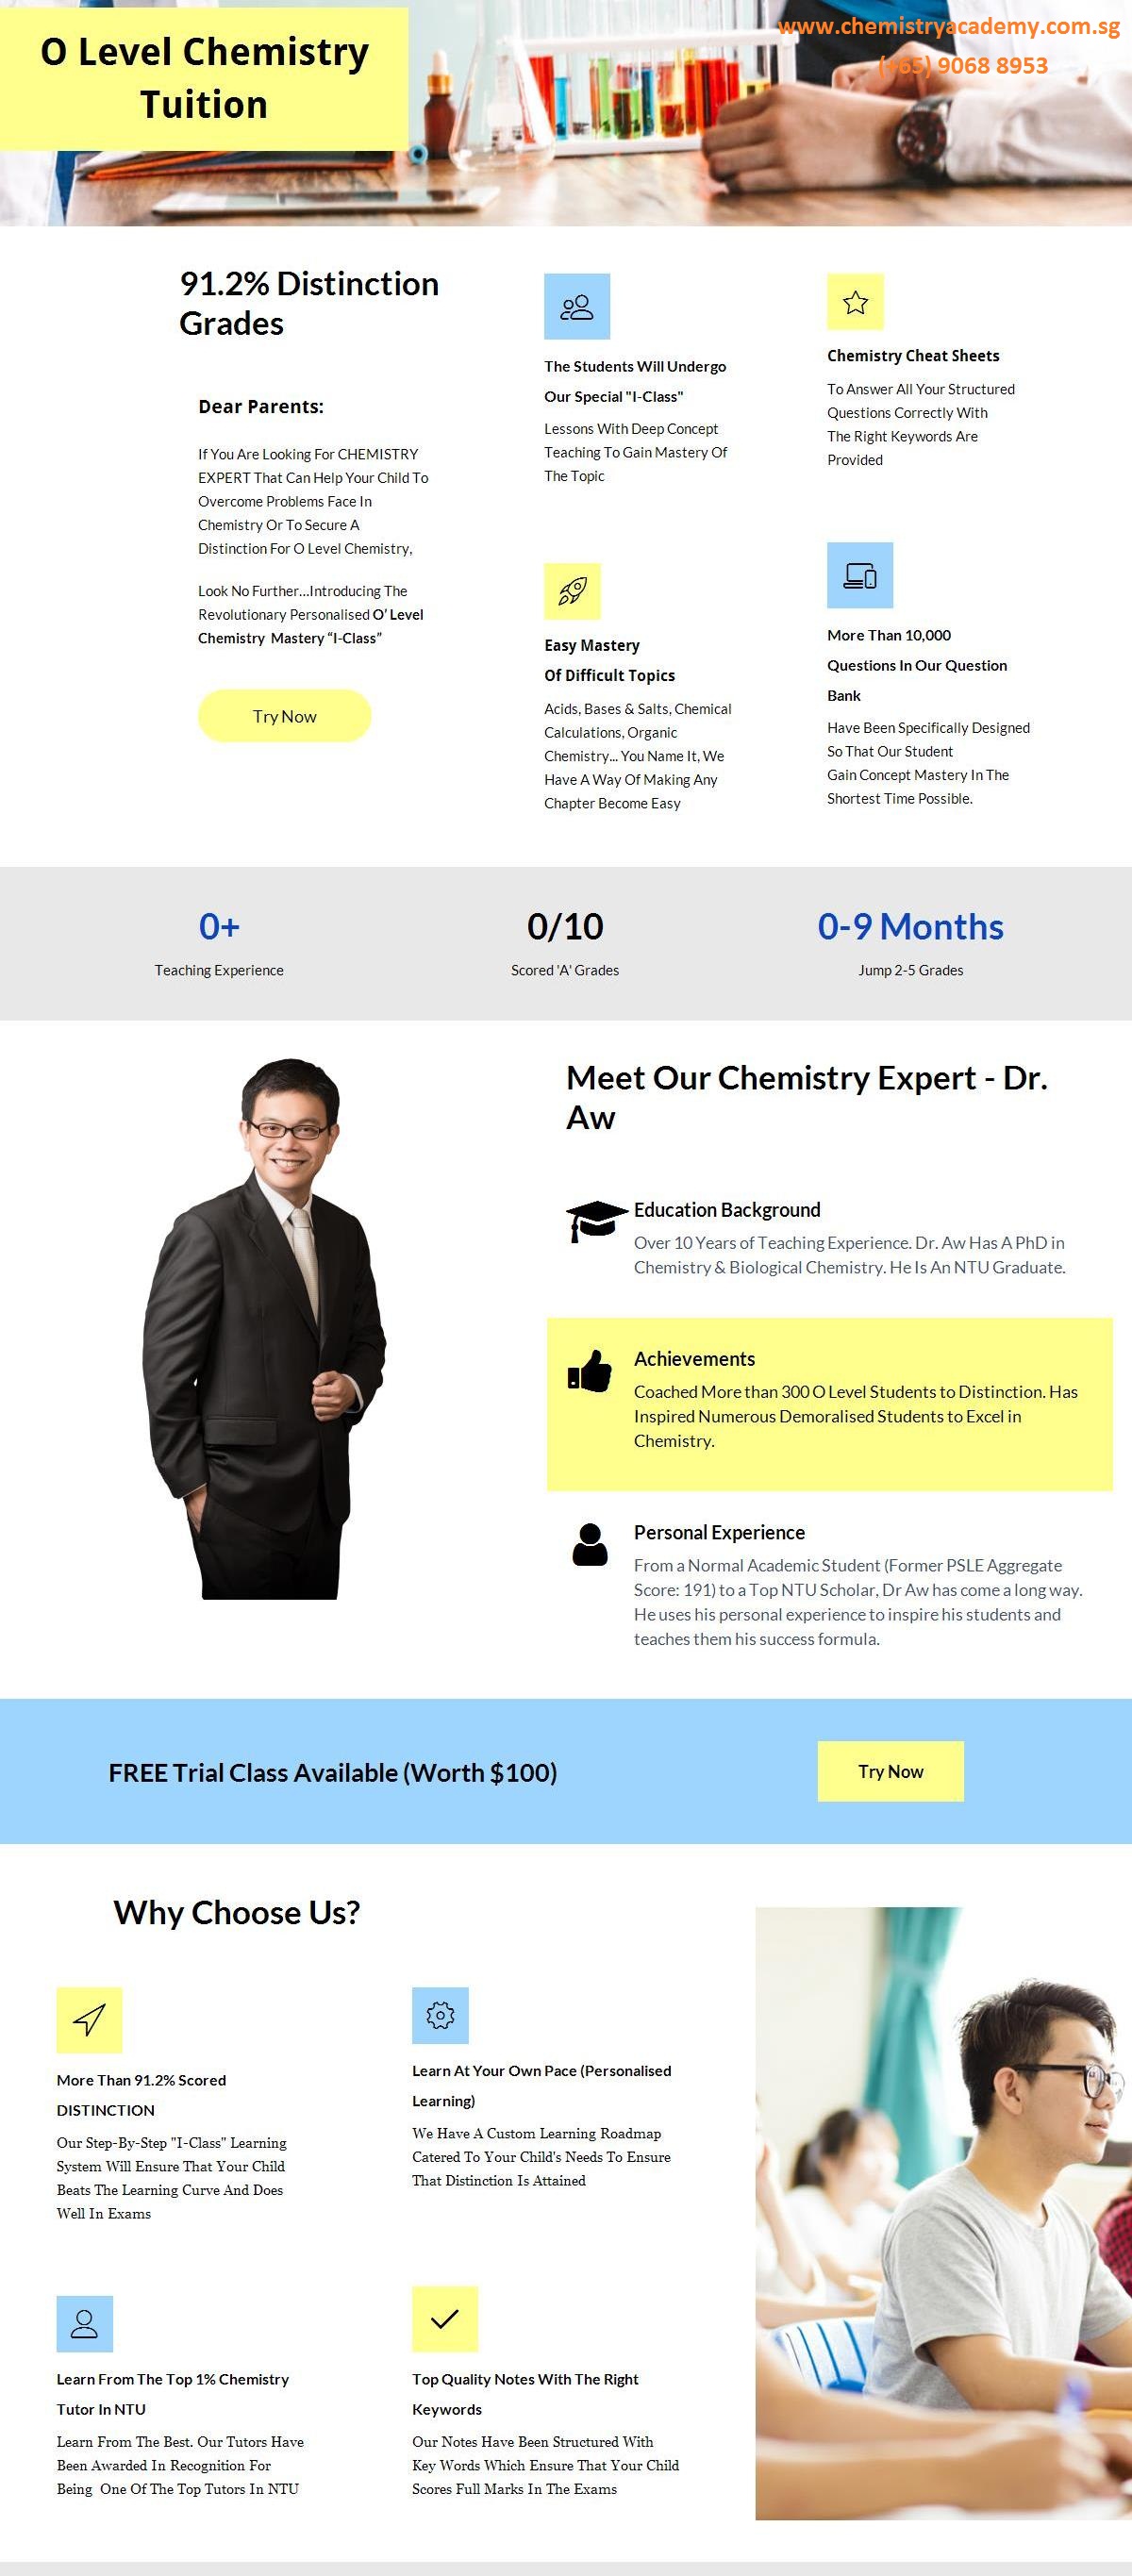 O Level Chemistry Tuition, Bukit Batok, Singapore